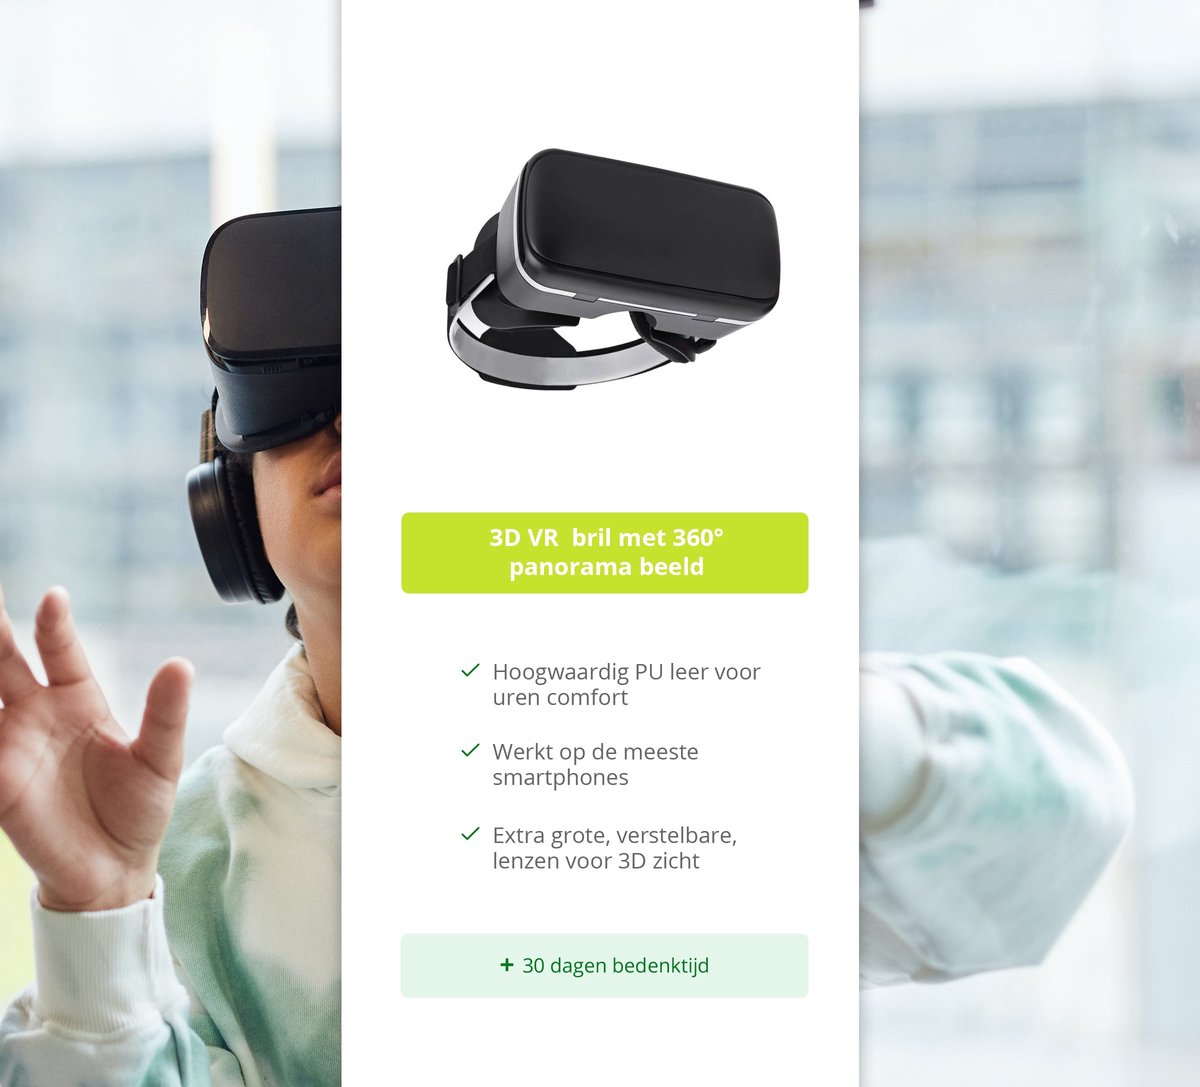 Casque VR pour Smartphone, Réalité Virtuelle 3D avec Sangle Ajustable -  Noir - Français